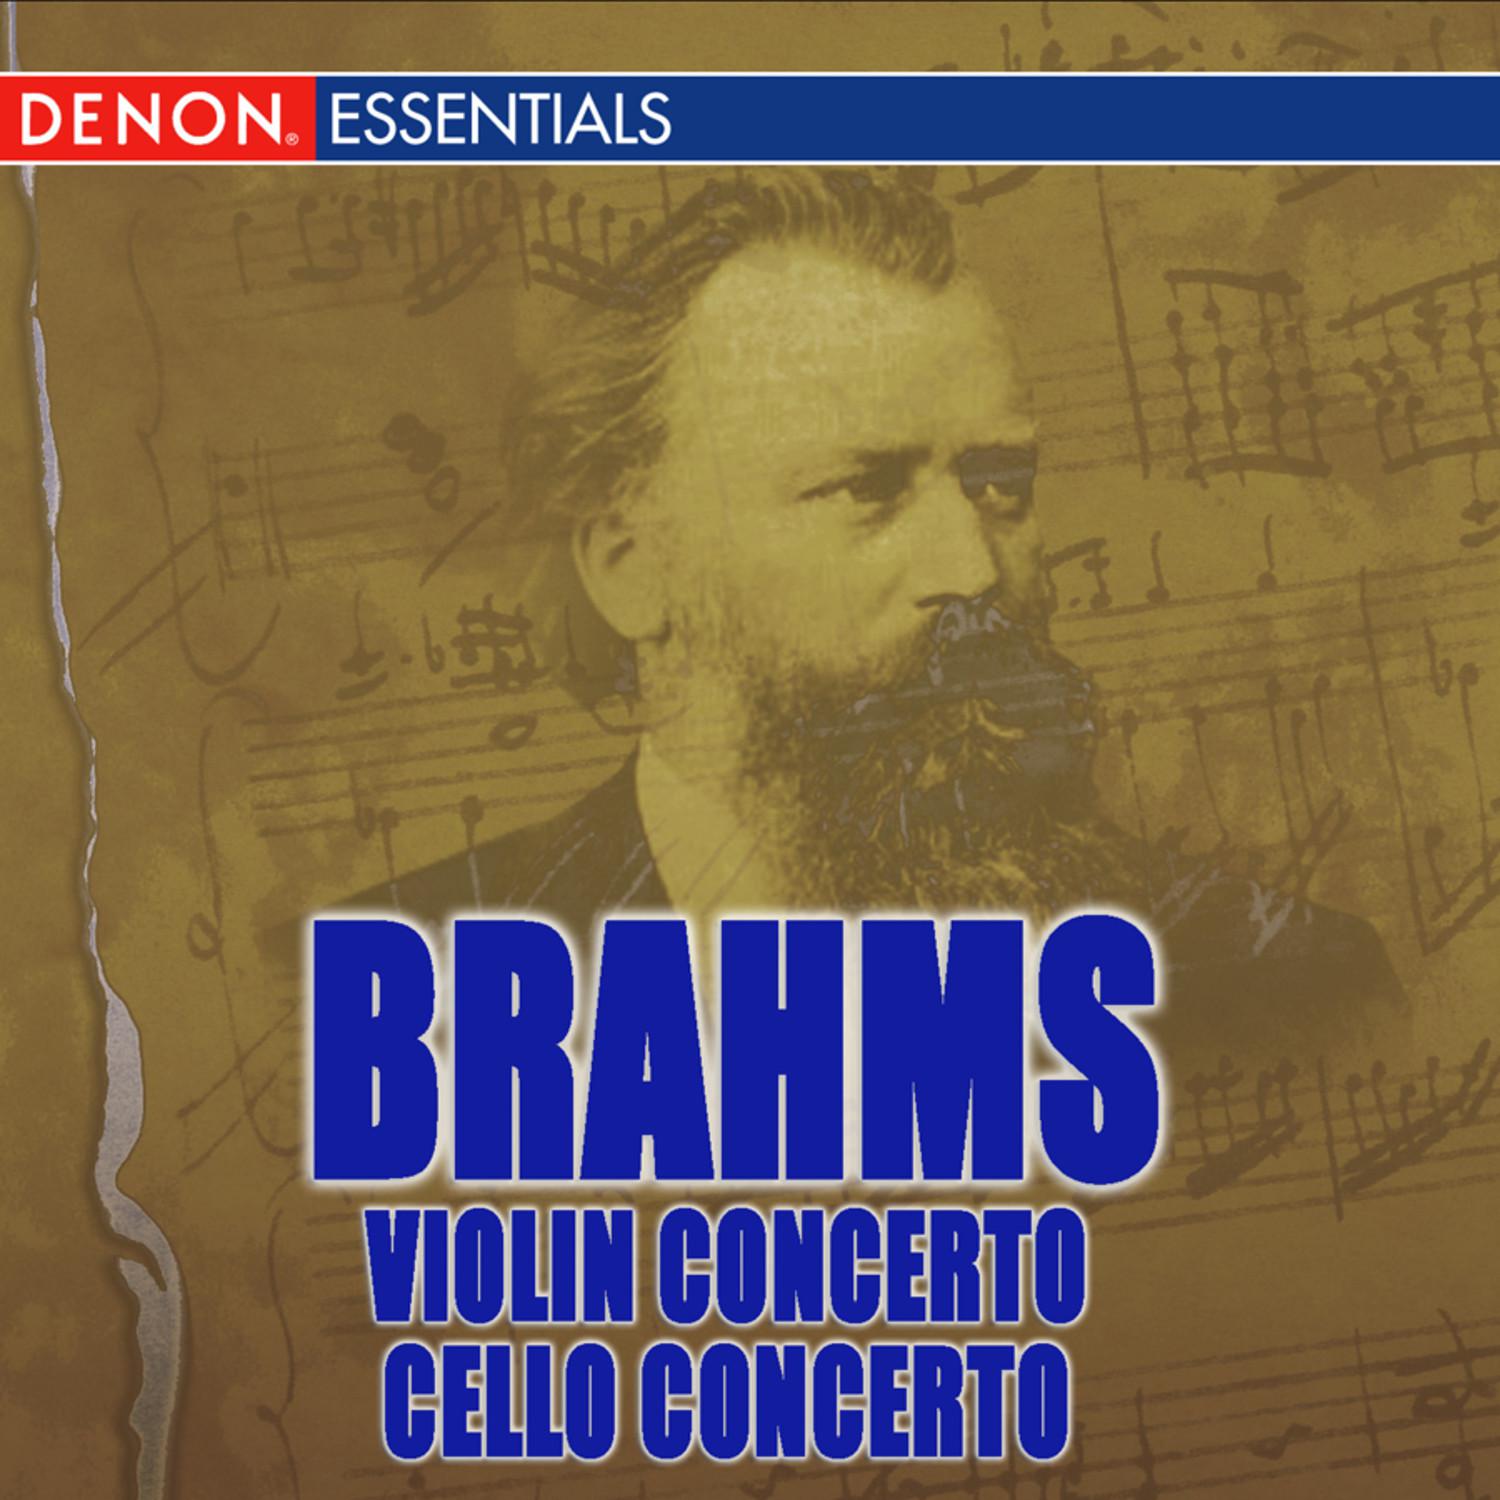 Concerto for Violin, Cello & Orchestra in A Minor, Op. 102: I. Allegro